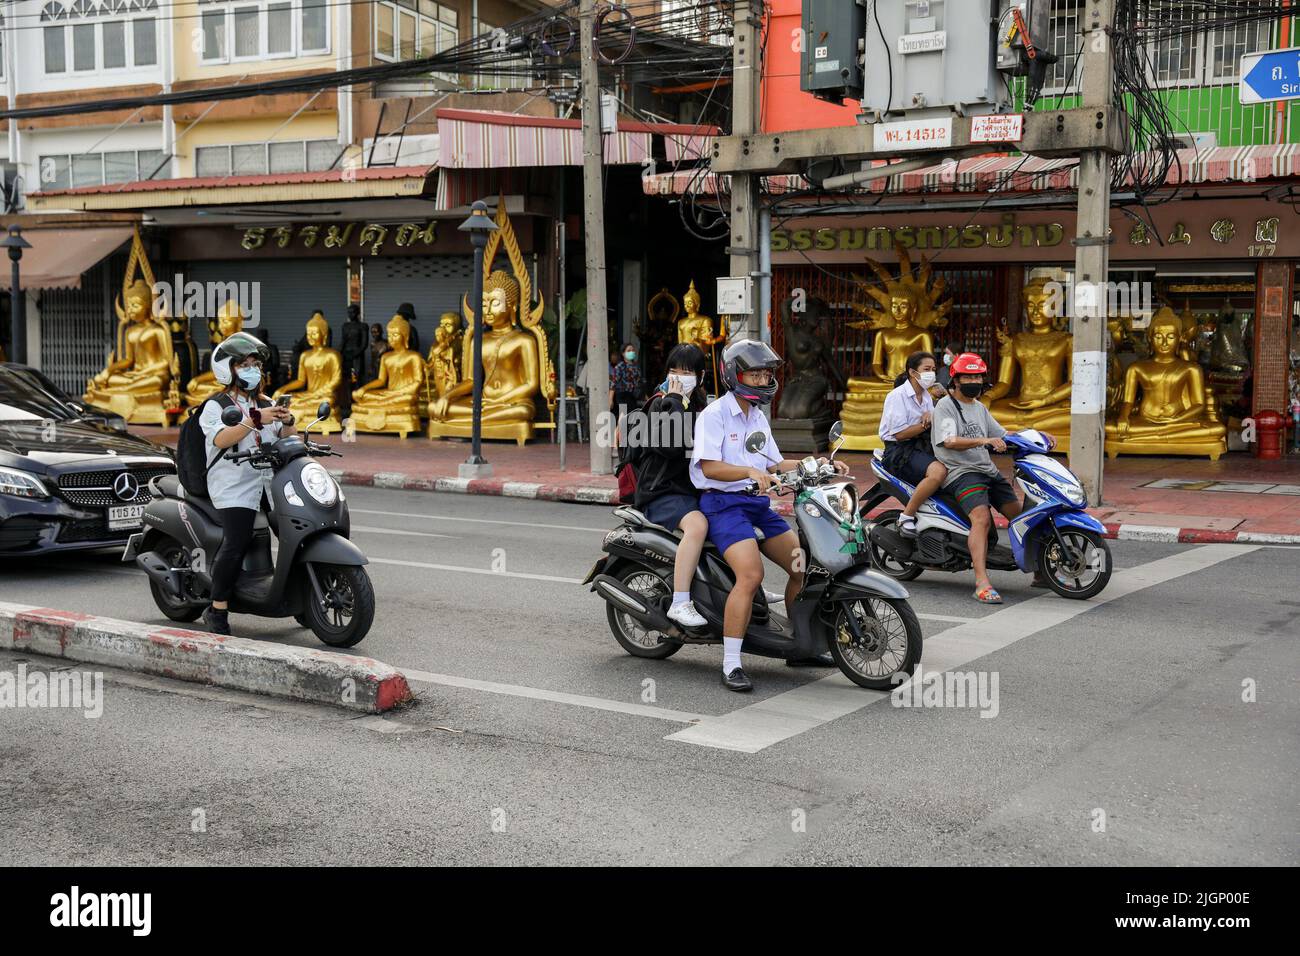 Autofahrer kommen an Buddha-Statuen entlang einer Straße im Inneren des Großen Palastes in Bangkok vorbei. Thailand setzt trotz einer globalen Pandemie und neuer Wellen von Coronavirus-Fällen die Beschränkungen fort, um seinen Tourismus zu fördern. Thailand. Stockfoto